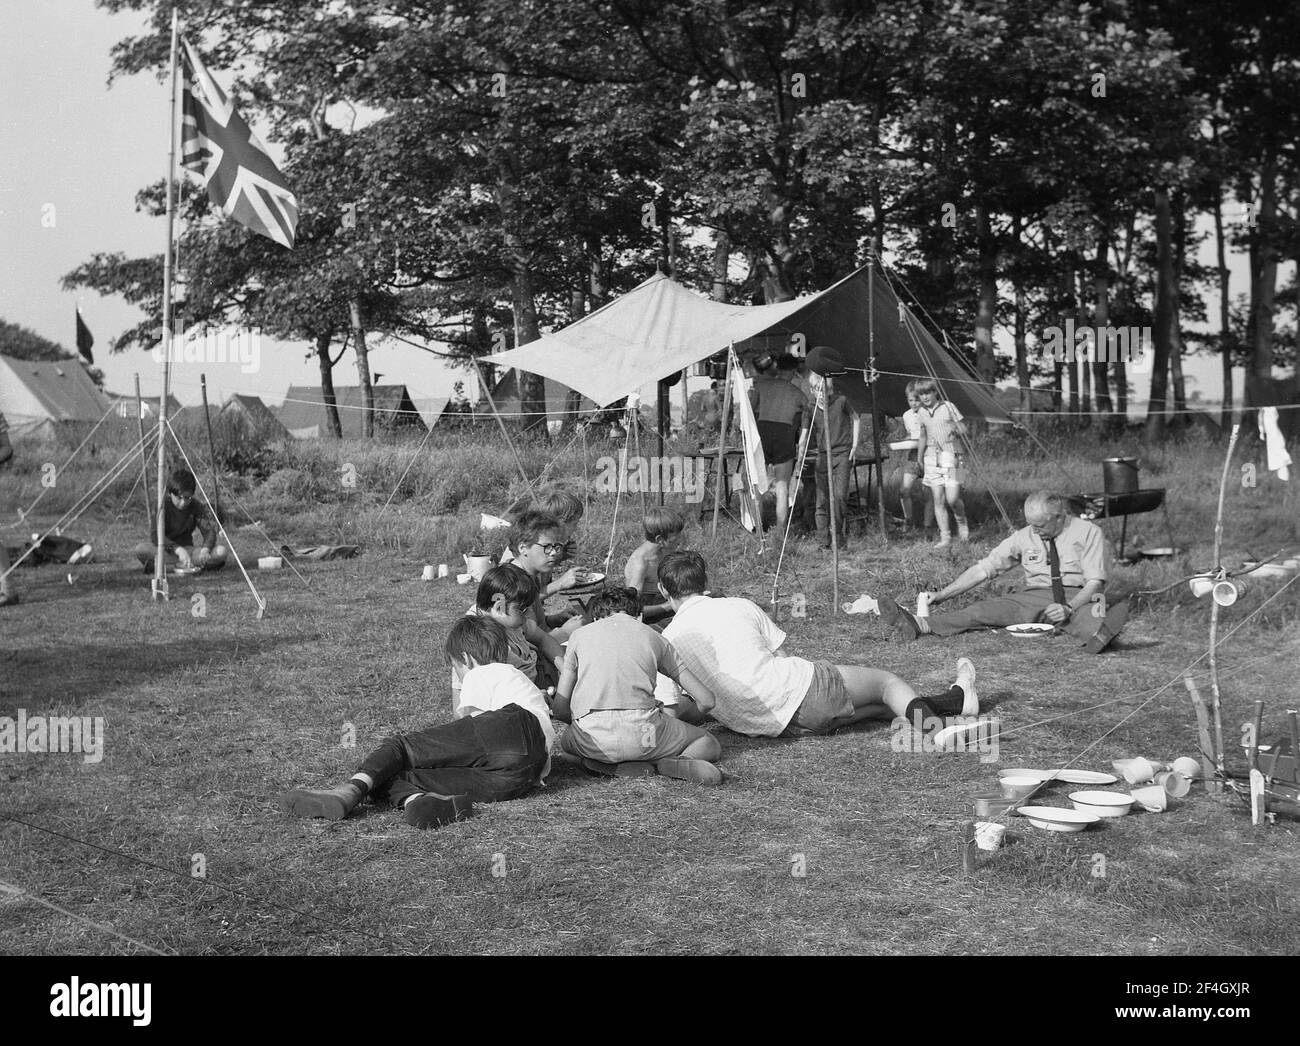 1969, historique, des garçons dans un camp de scouts d'été, assis sur l'herbe mangeant la nourriture, dans le domaine de Temple Newsam, Leeds, Angleterre, Royaume-Uni. Un drapeau de prise Union se trouve sur un mât. Banque D'Images